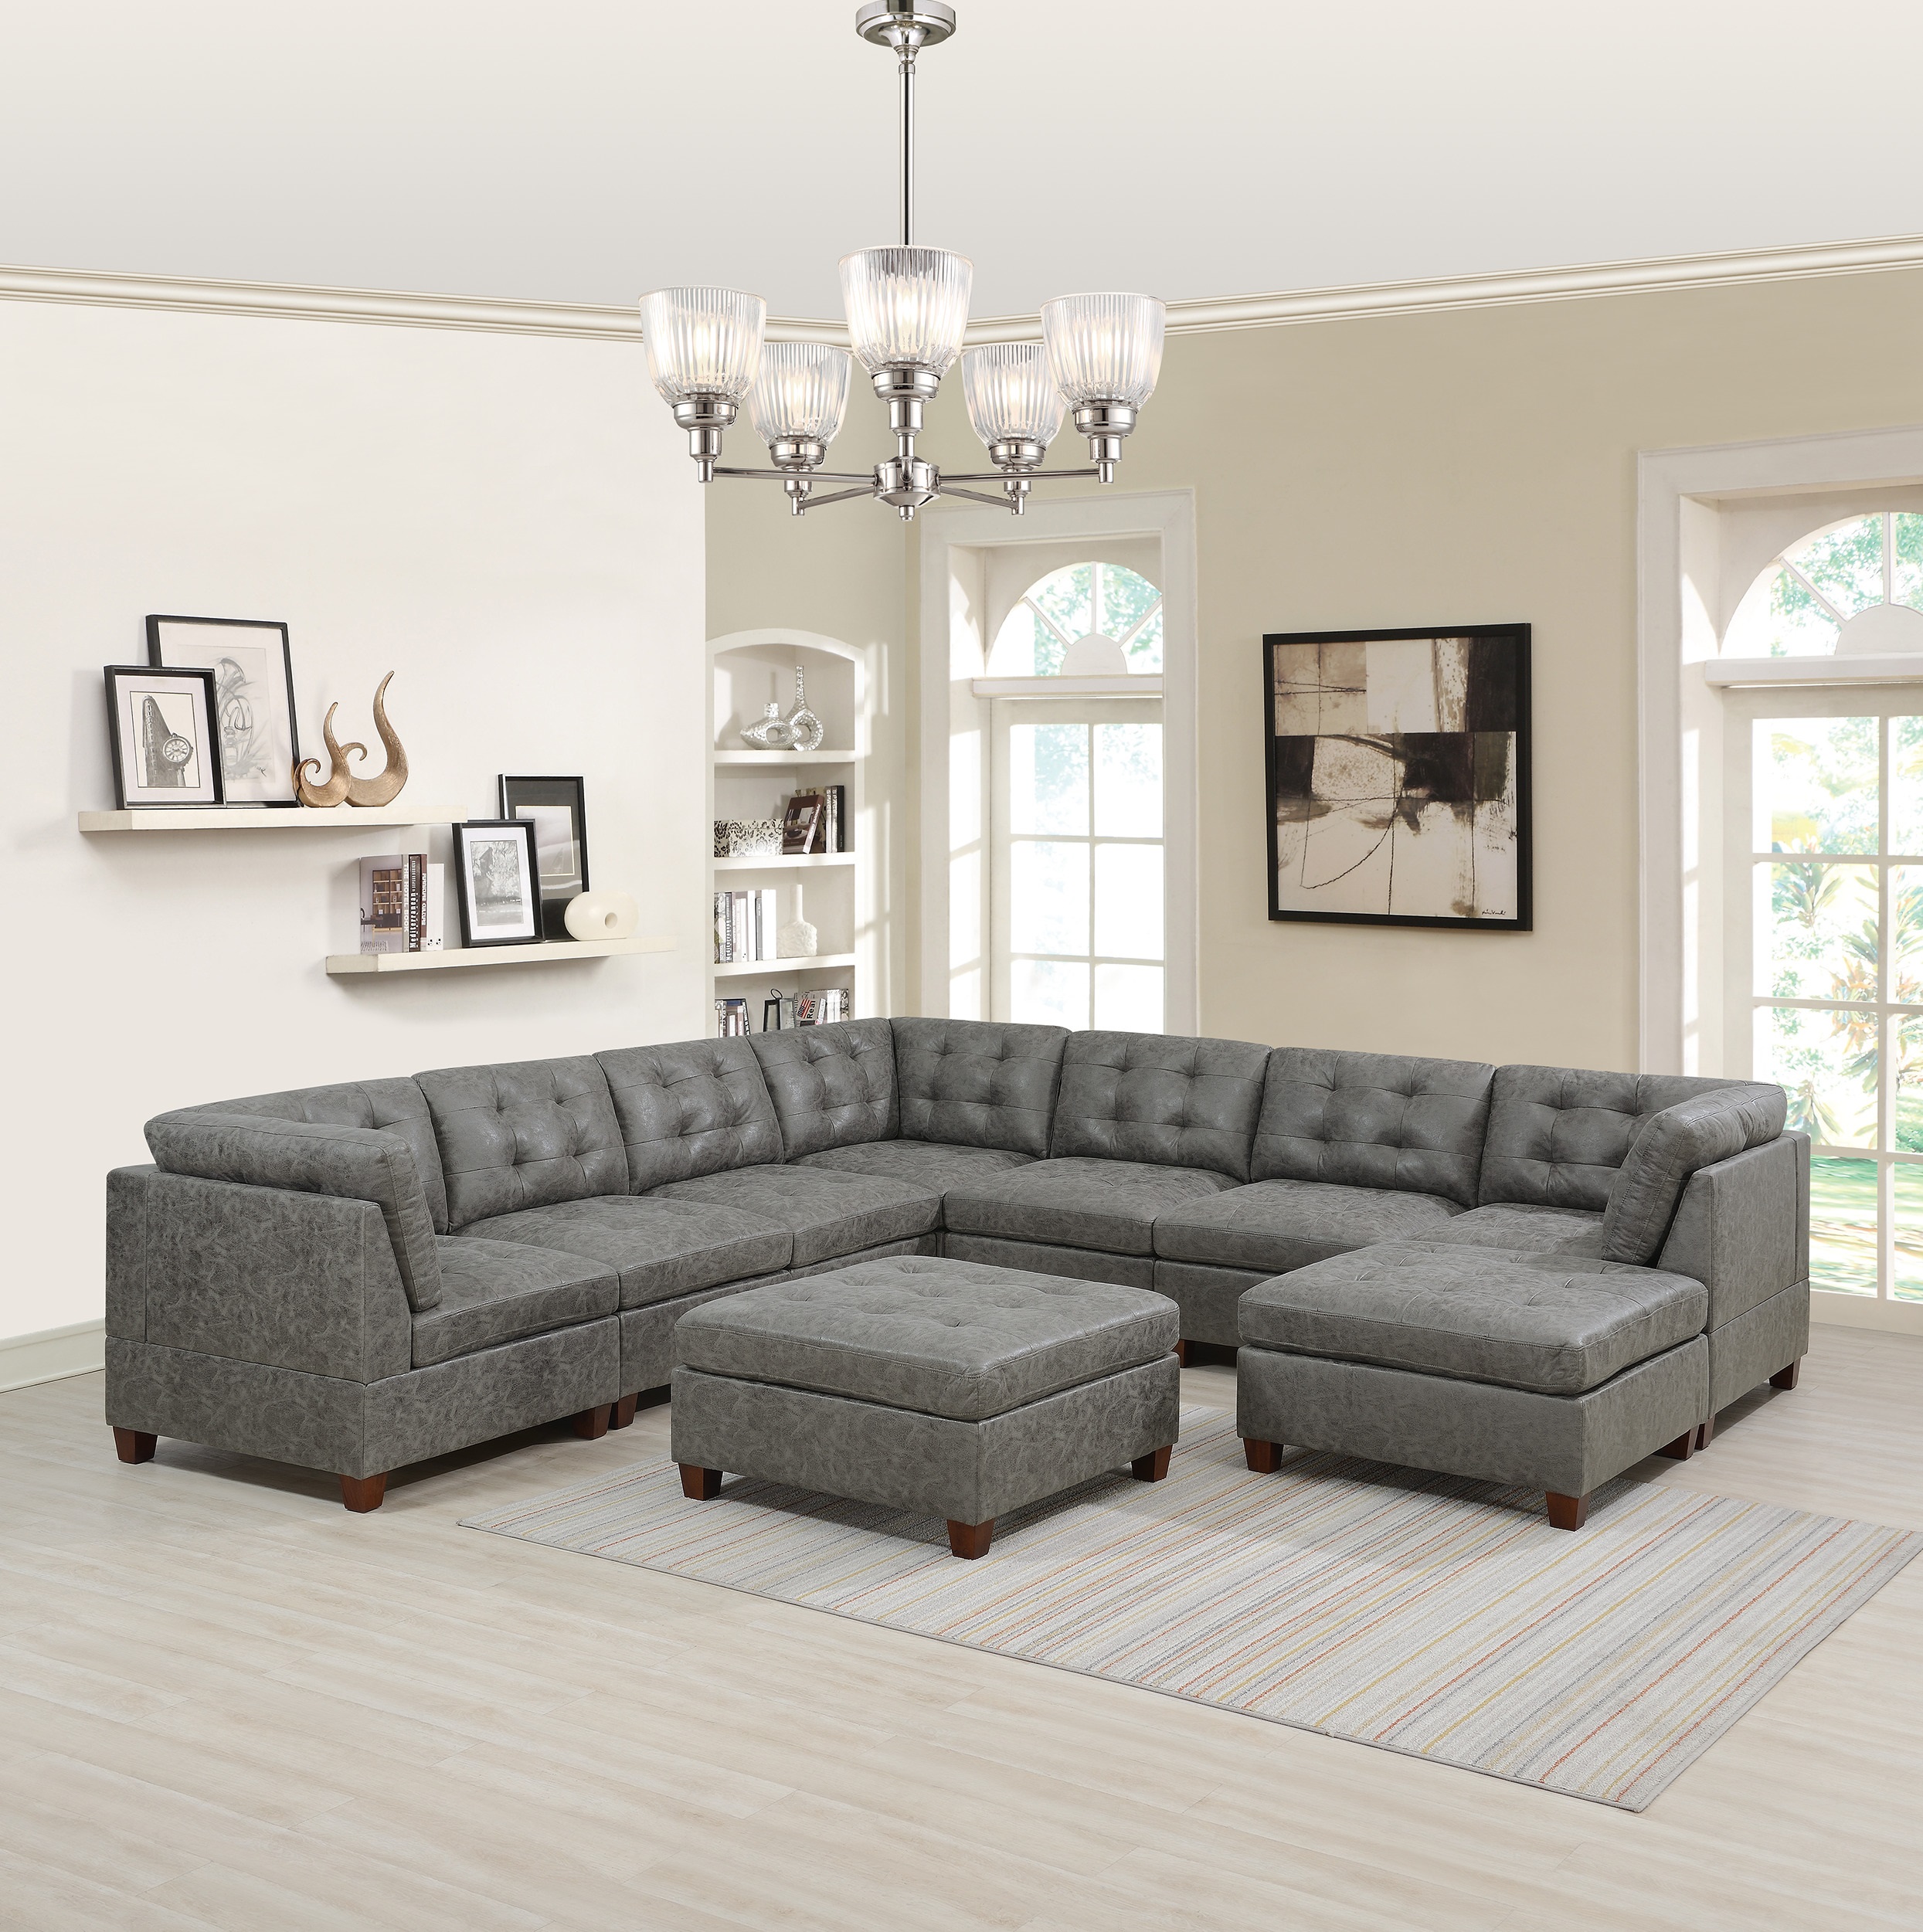 Esofa Simple Modern Leatherette, Simple Living Room Furniture